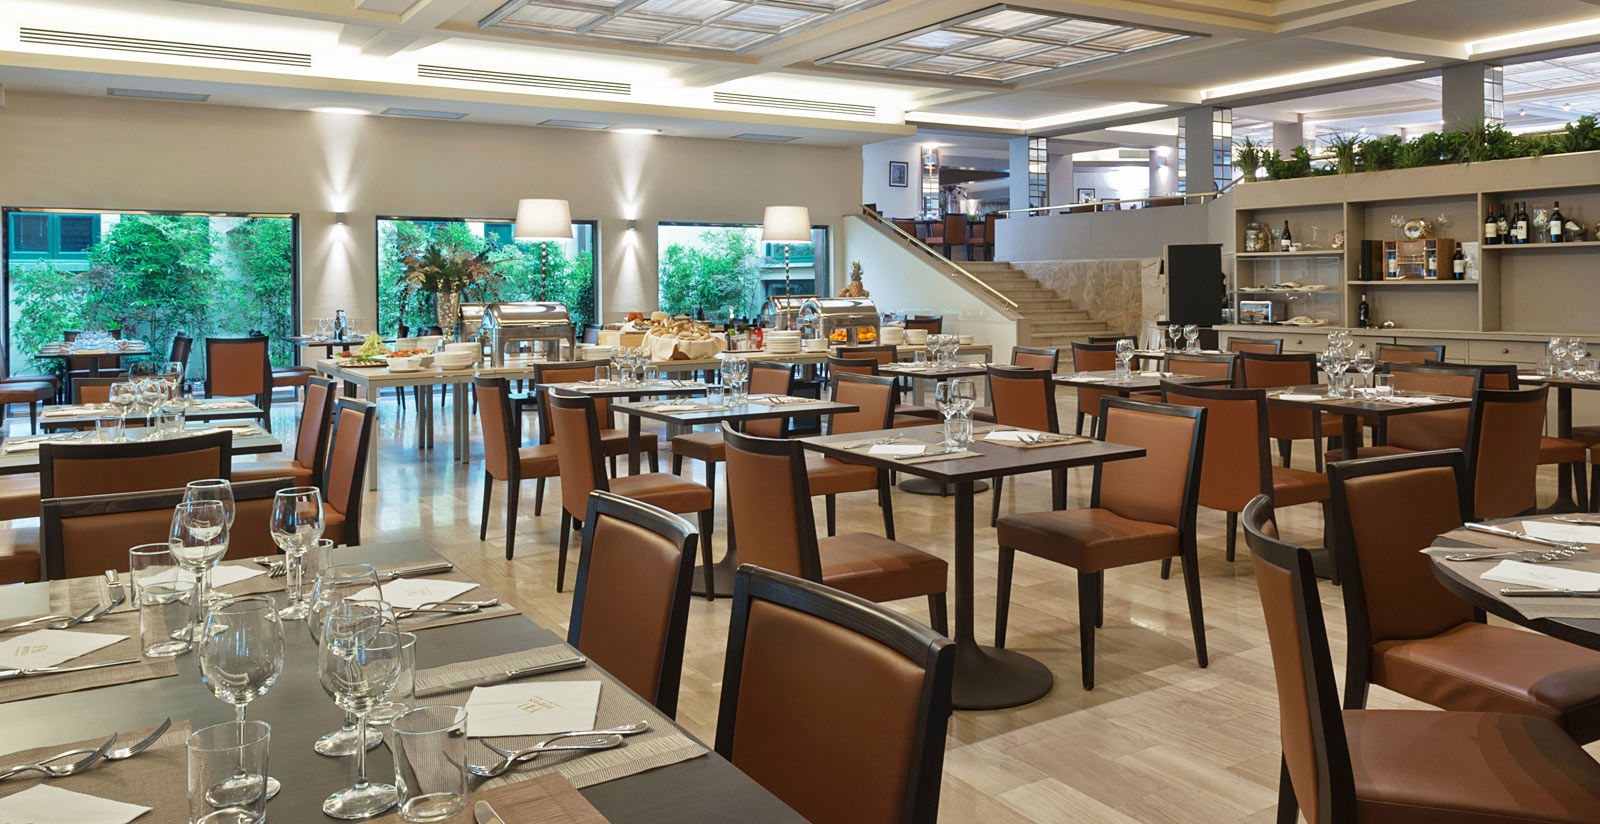 Grand Hotel Mediterraneo - Restaurant & Bar 5